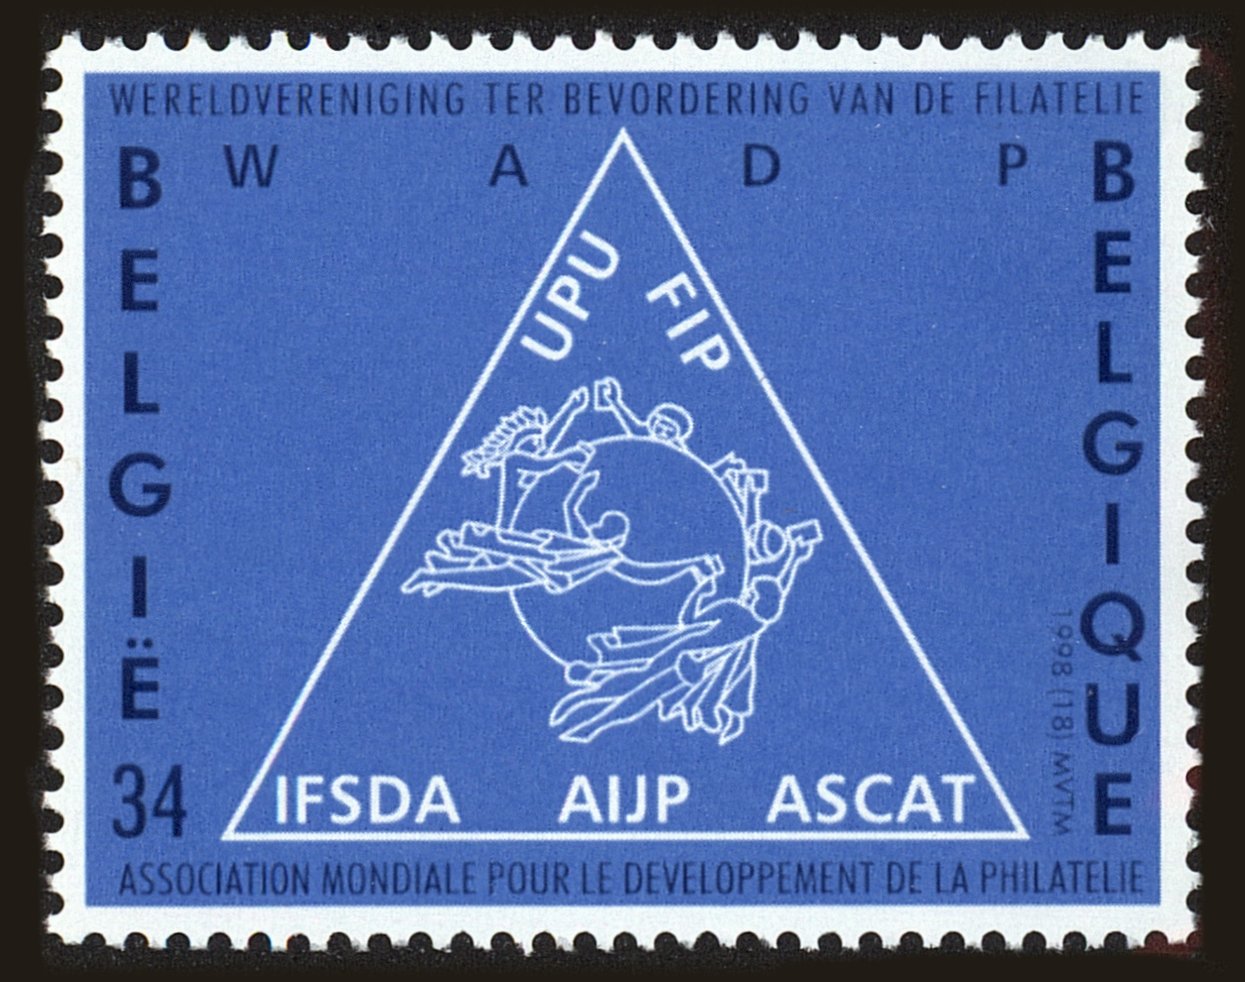 Front view of Belgium 1711 collectors stamp